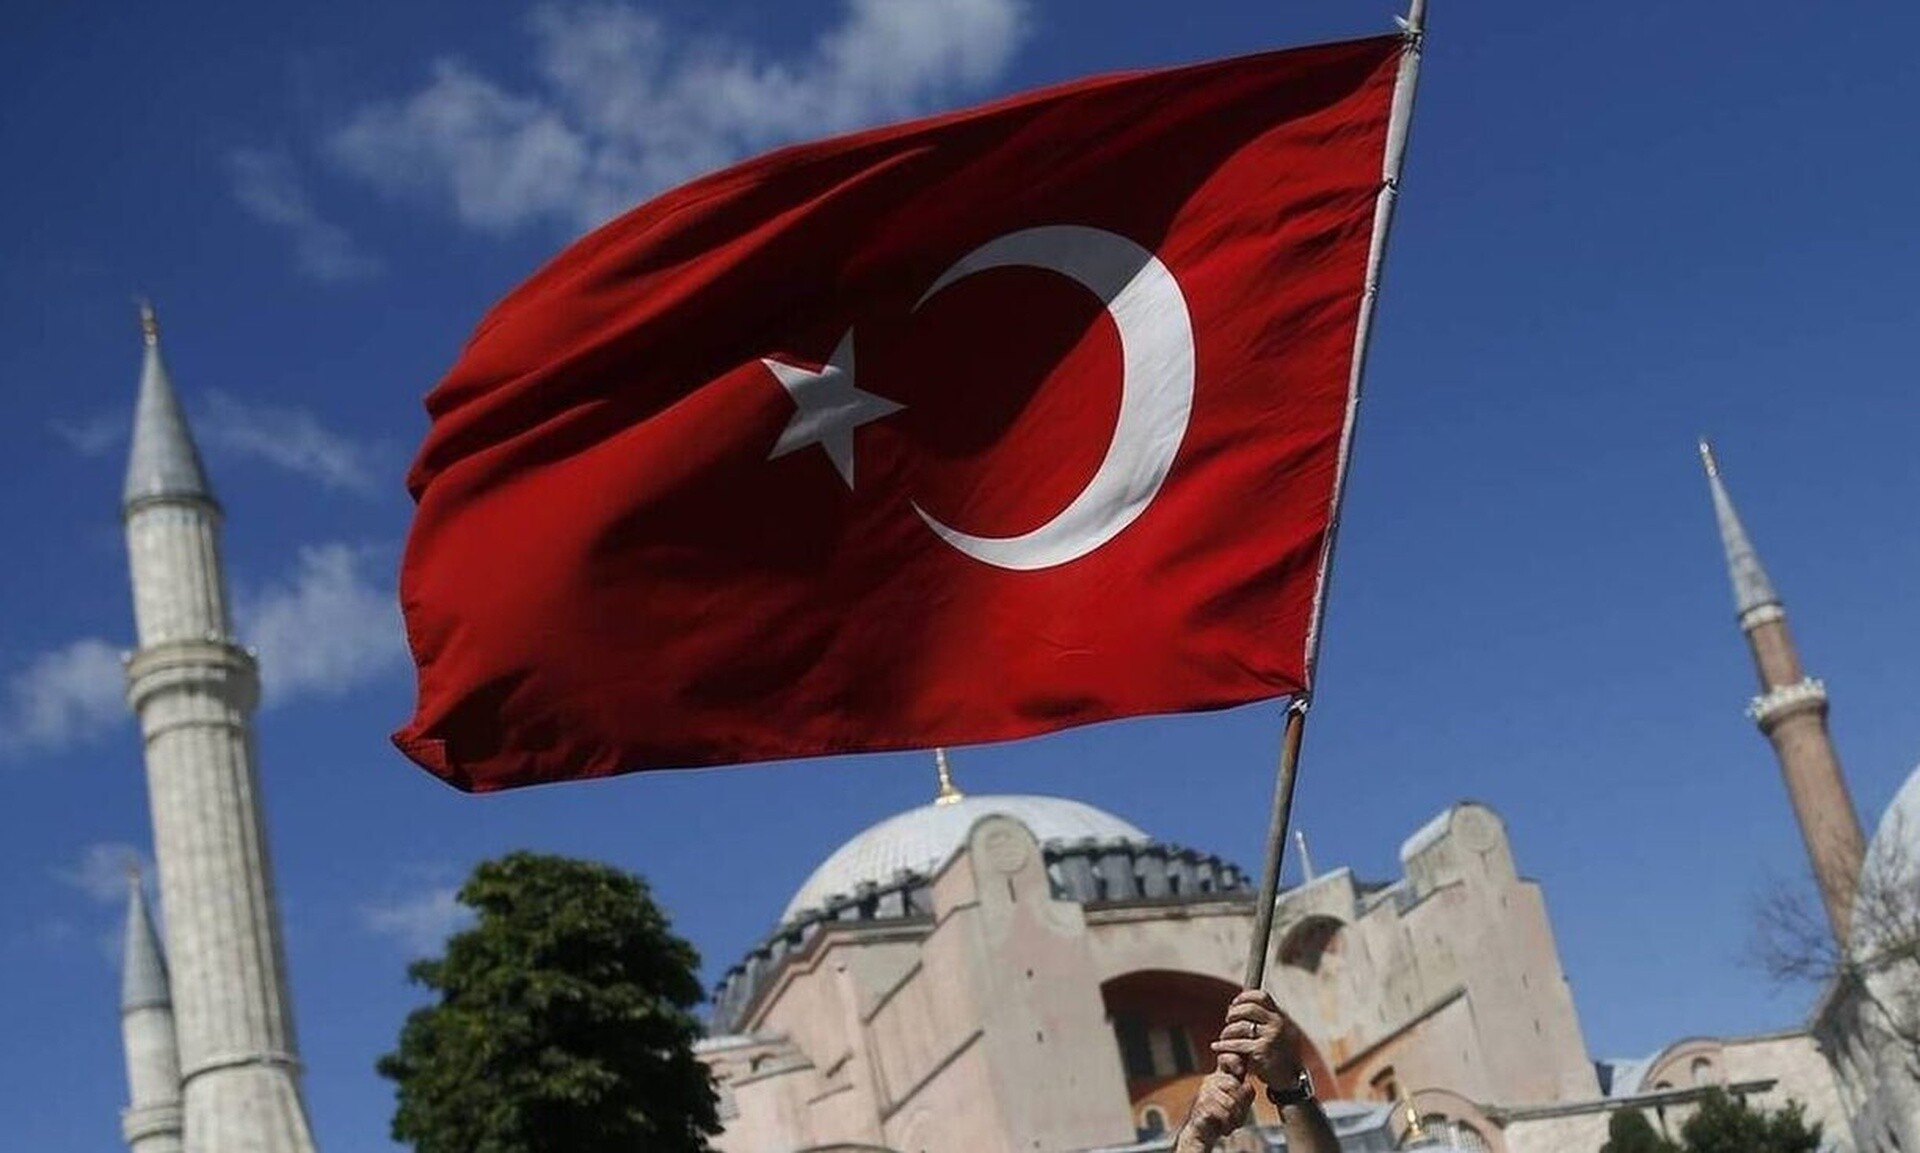 Τουρκία: Φουντώνουν οι φήμες για σχέδιο συνομωσίας ή πραξικοπήματος κατά της κυβέρνησης